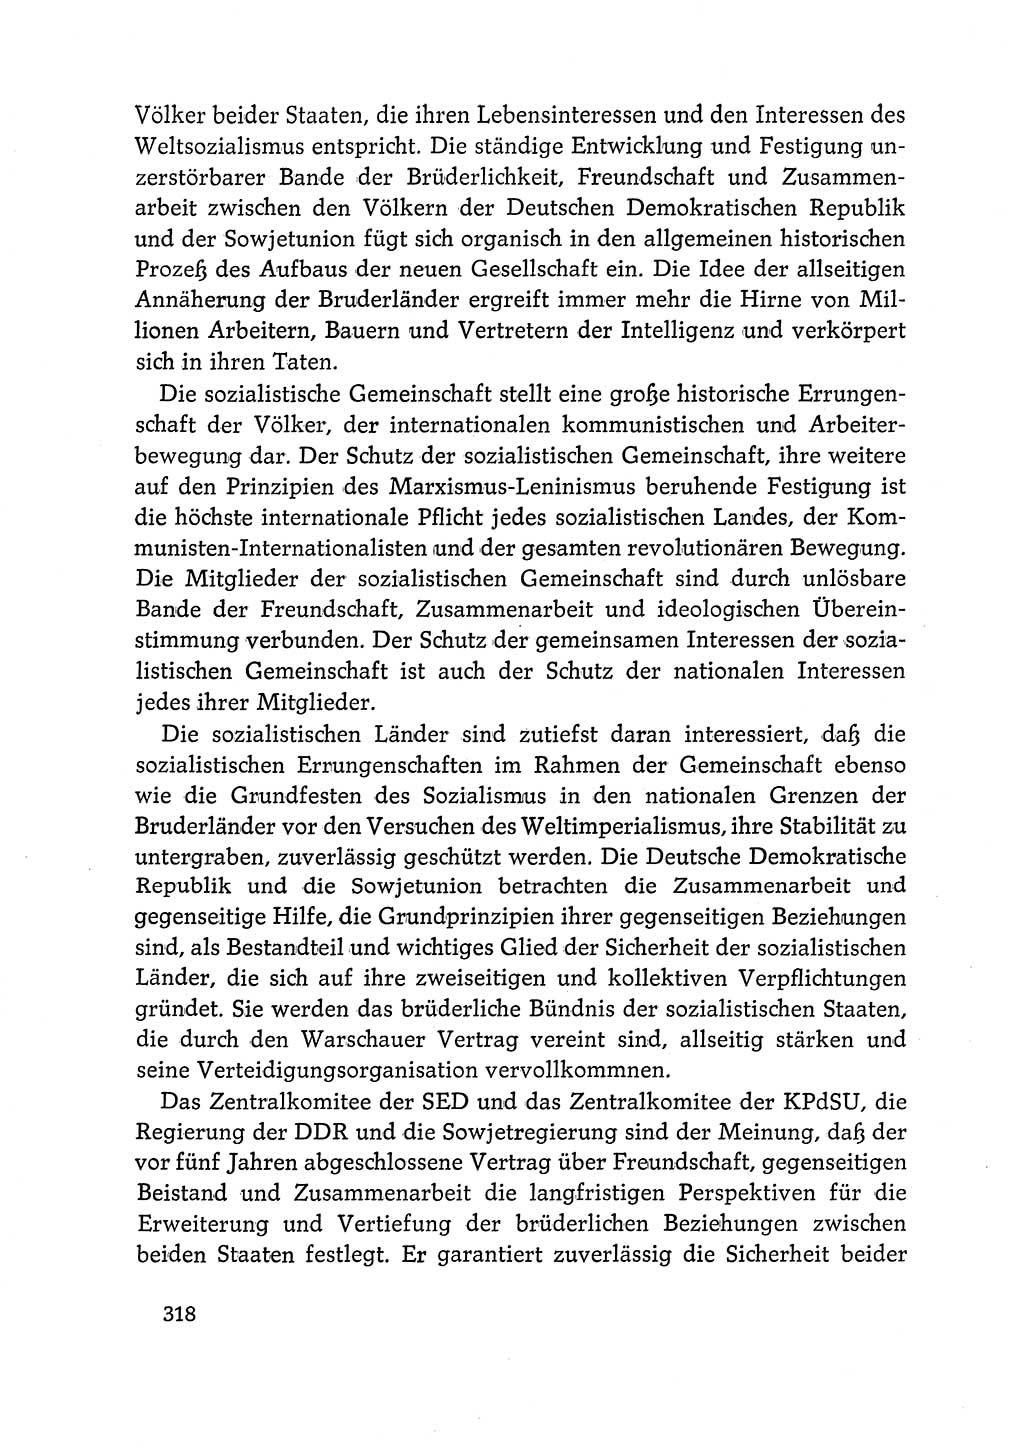 Dokumente der Sozialistischen Einheitspartei Deutschlands (SED) [Deutsche Demokratische Republik (DDR)] 1968-1969, Seite 318 (Dok. SED DDR 1968-1969, S. 318)